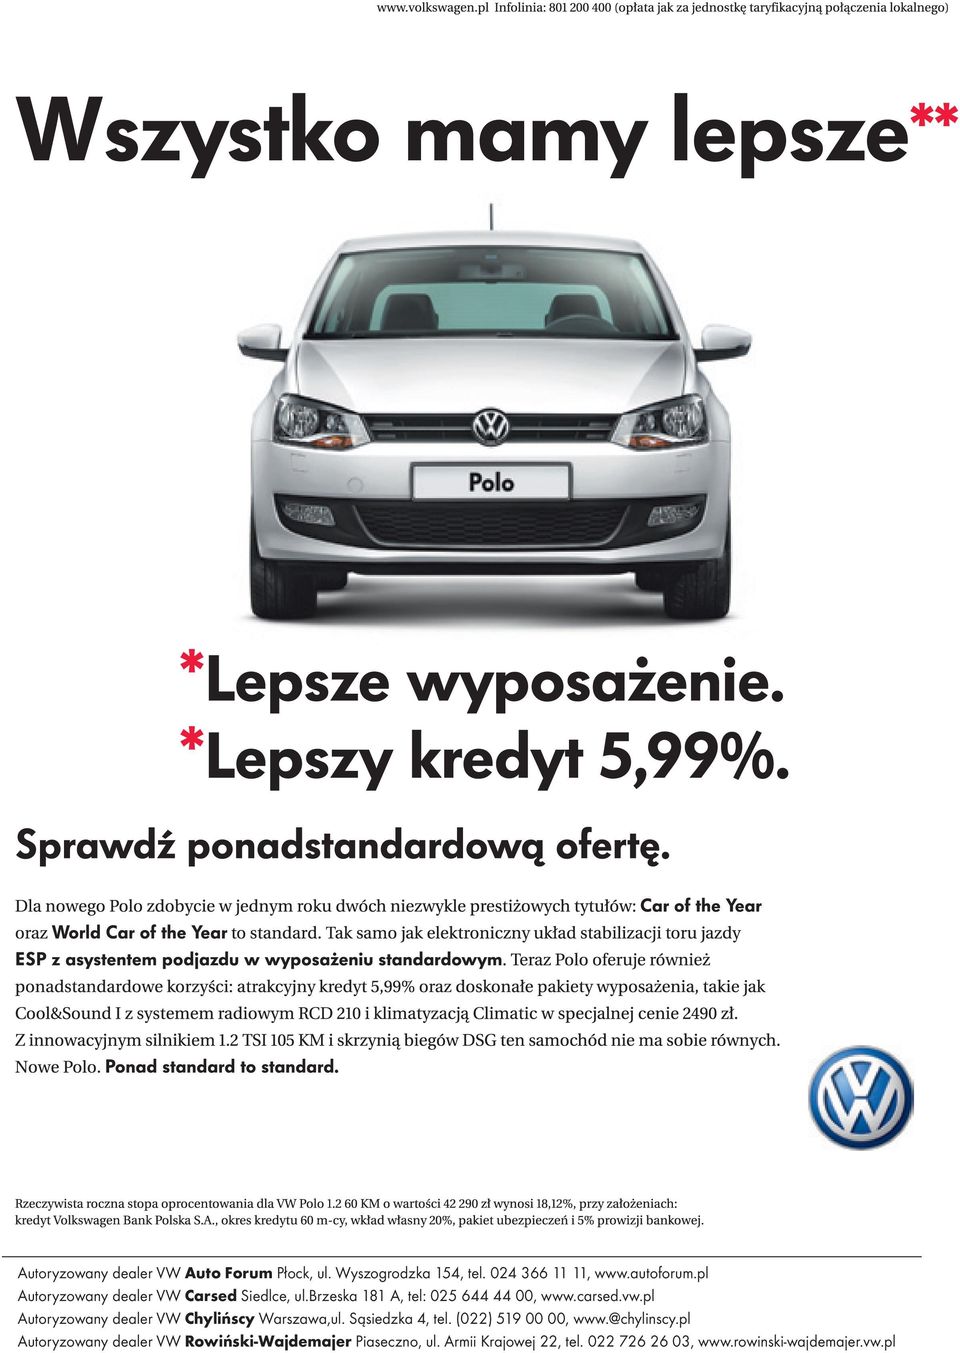 pl Autoryzowany dealer VW Chylińscy Warszawa,ul. Sąsiedzka 4, tel. (022) 519 00 00, www.@chylinscy.